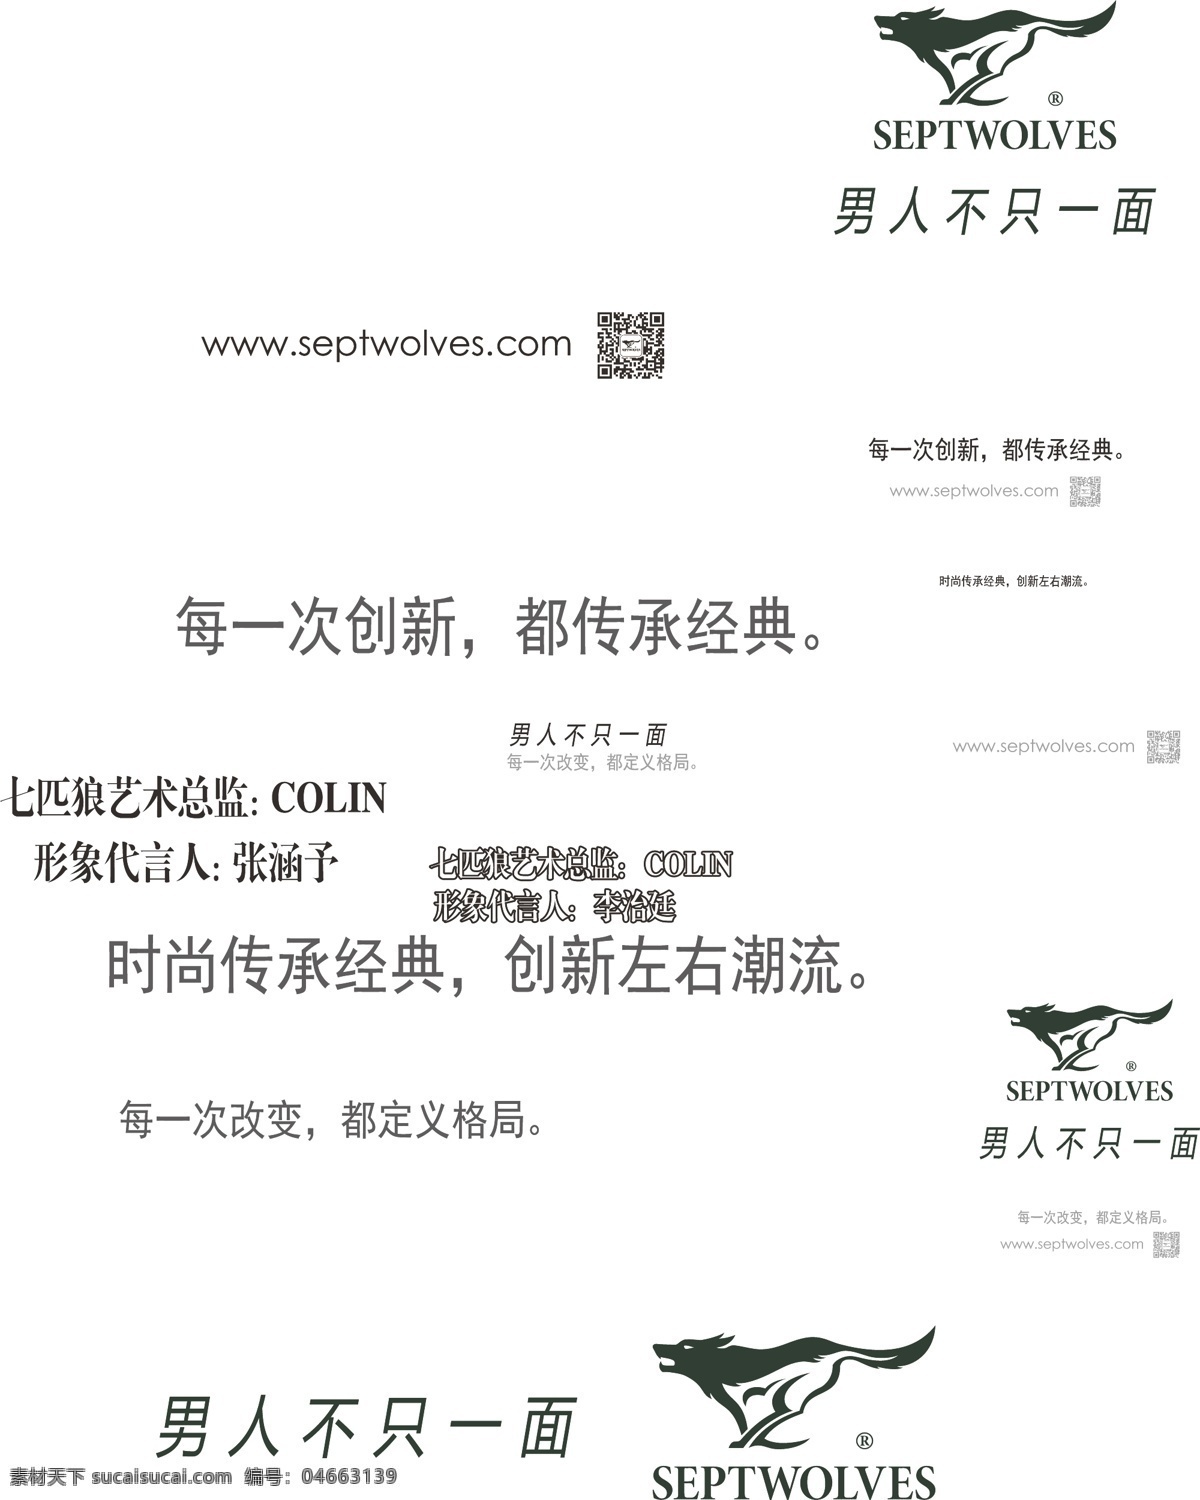 七匹狼 logo 模版下载 logo设计 淘宝logo 熊宝宝